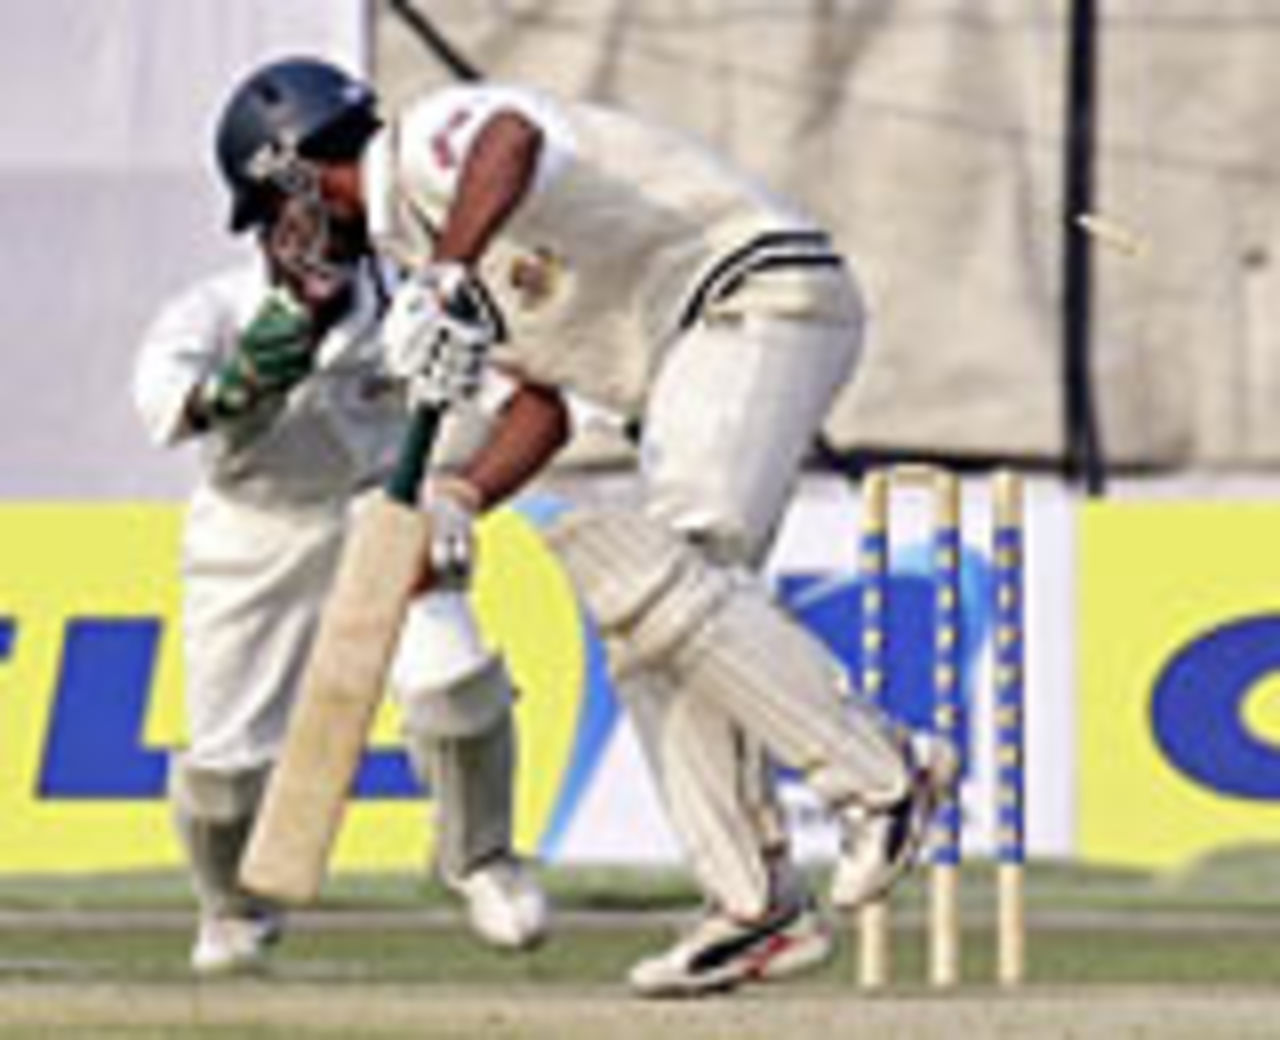 Khaled Mashud is bowled out, Bangladesh v Zimbabwe, 2nd Test, Dhaka, 2nd day, January 15, 2005